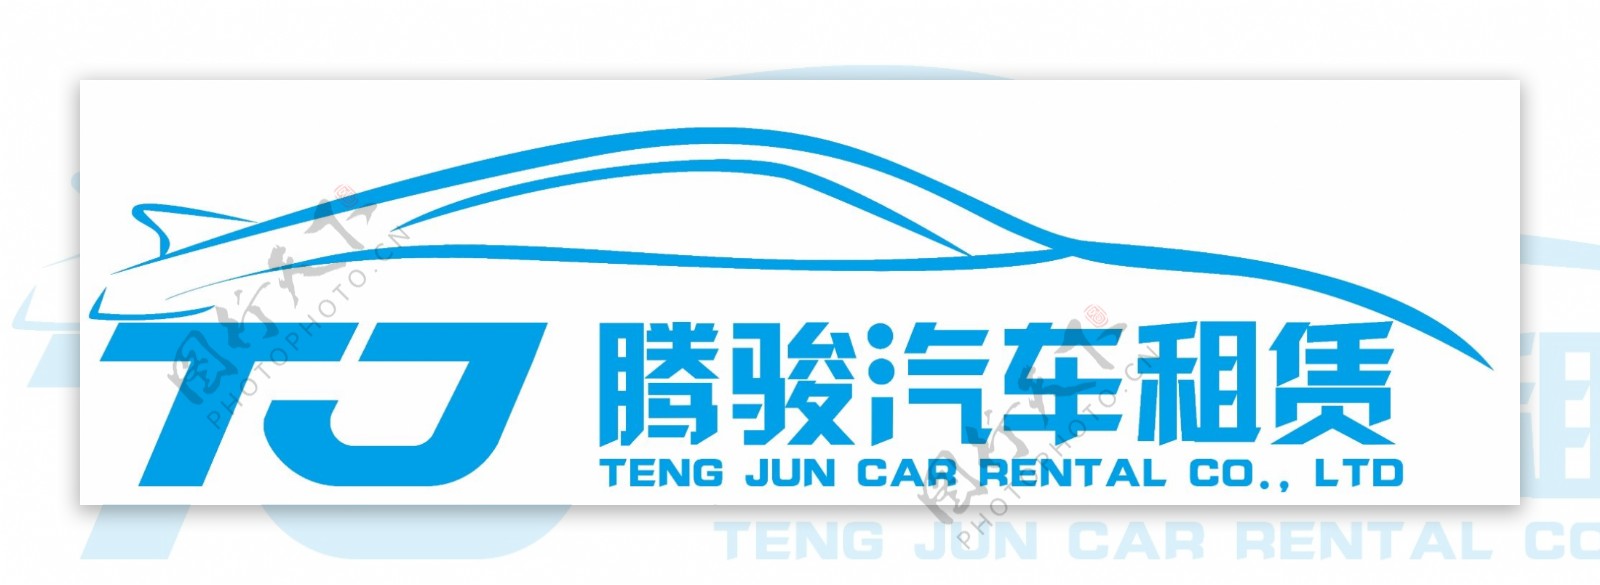 汽车类logo